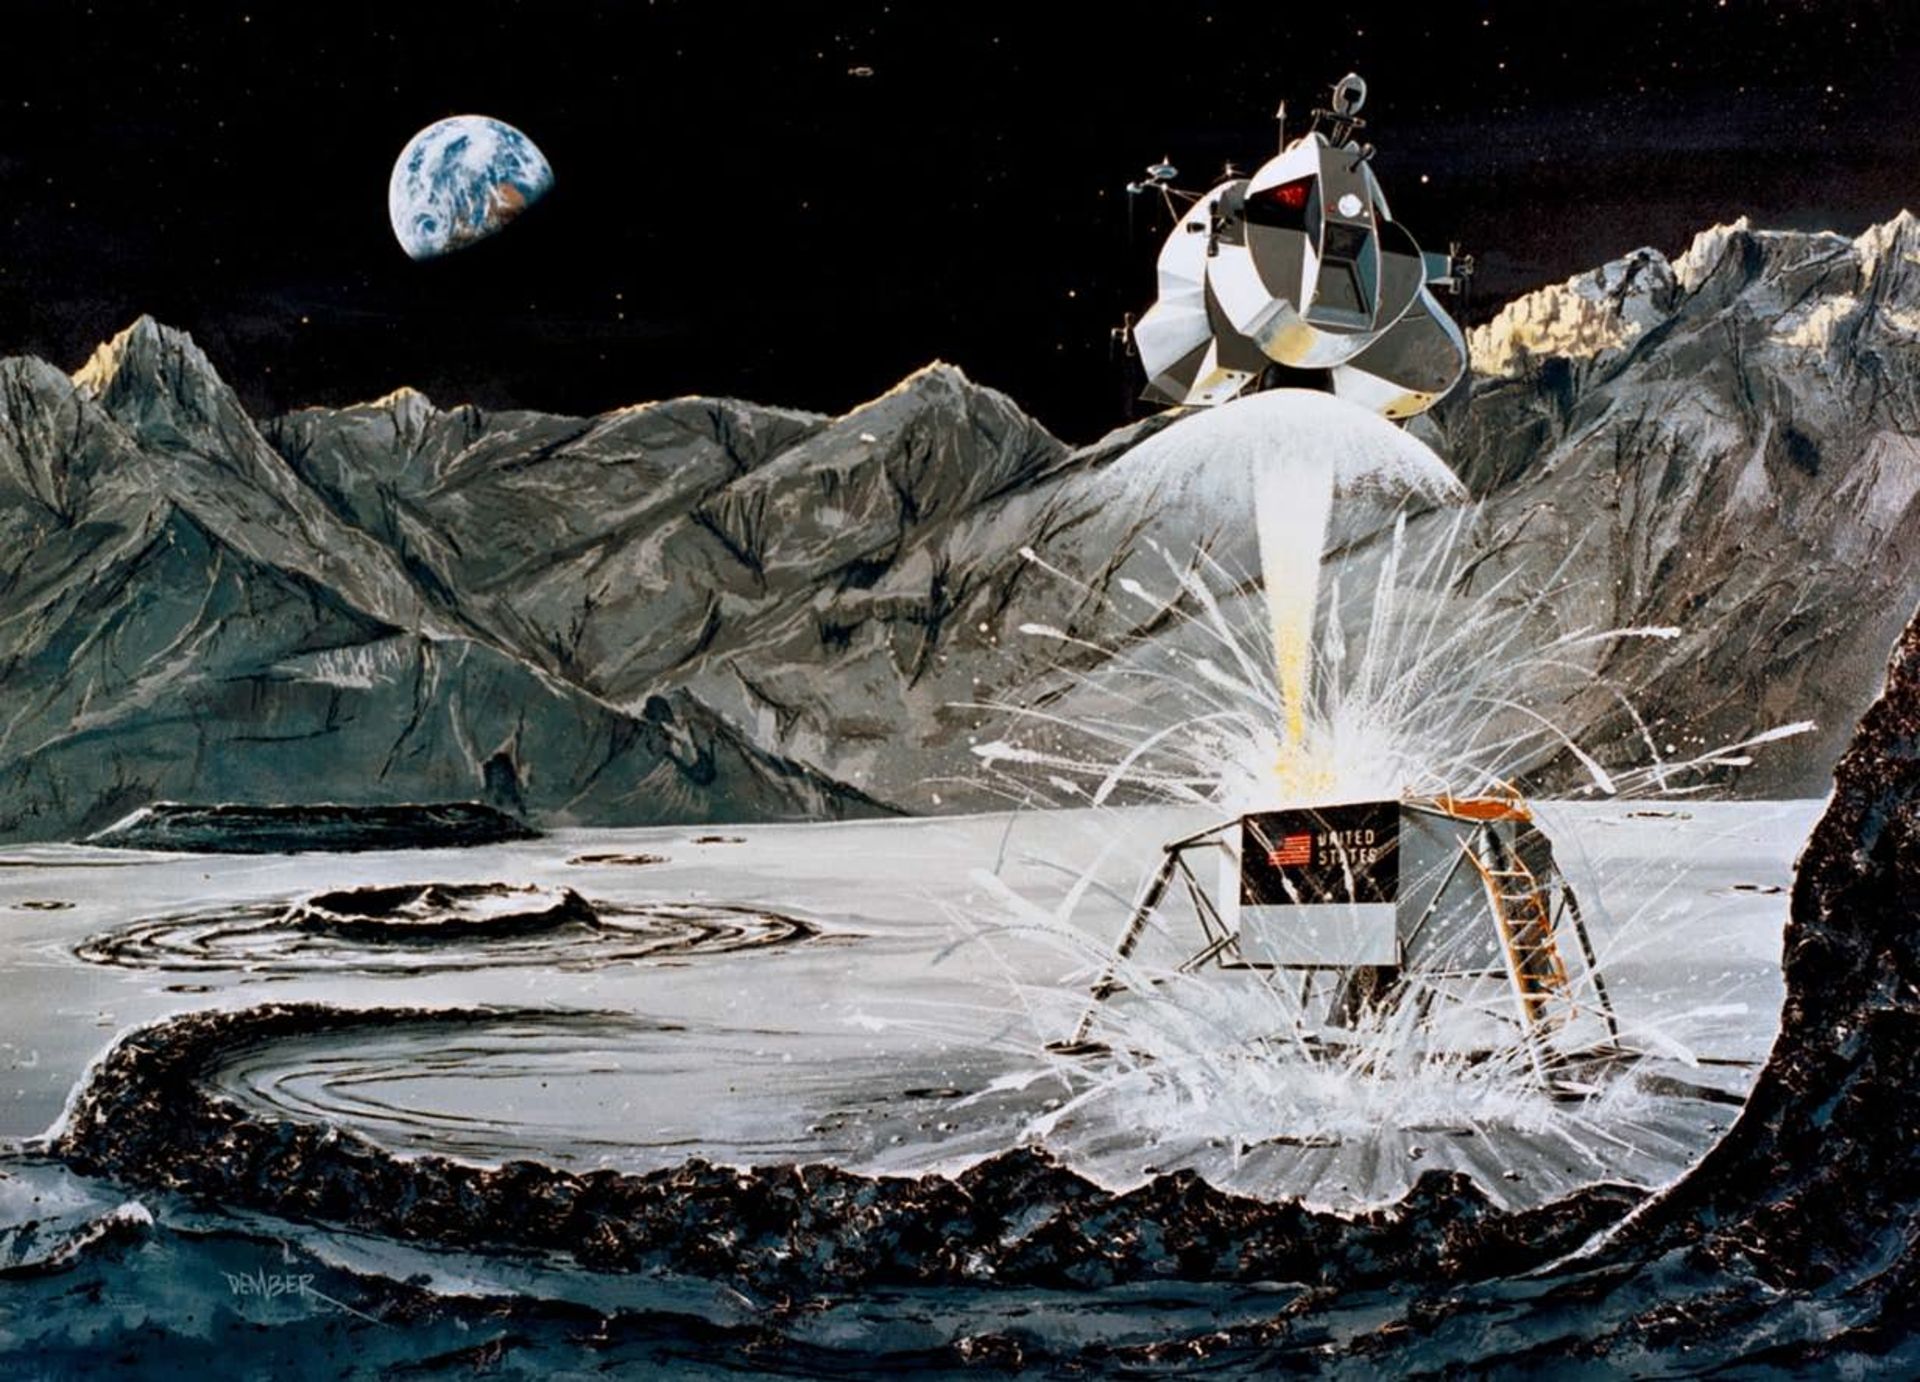 مرجع متخصصين ايران Apollo 11 / آپولو 11